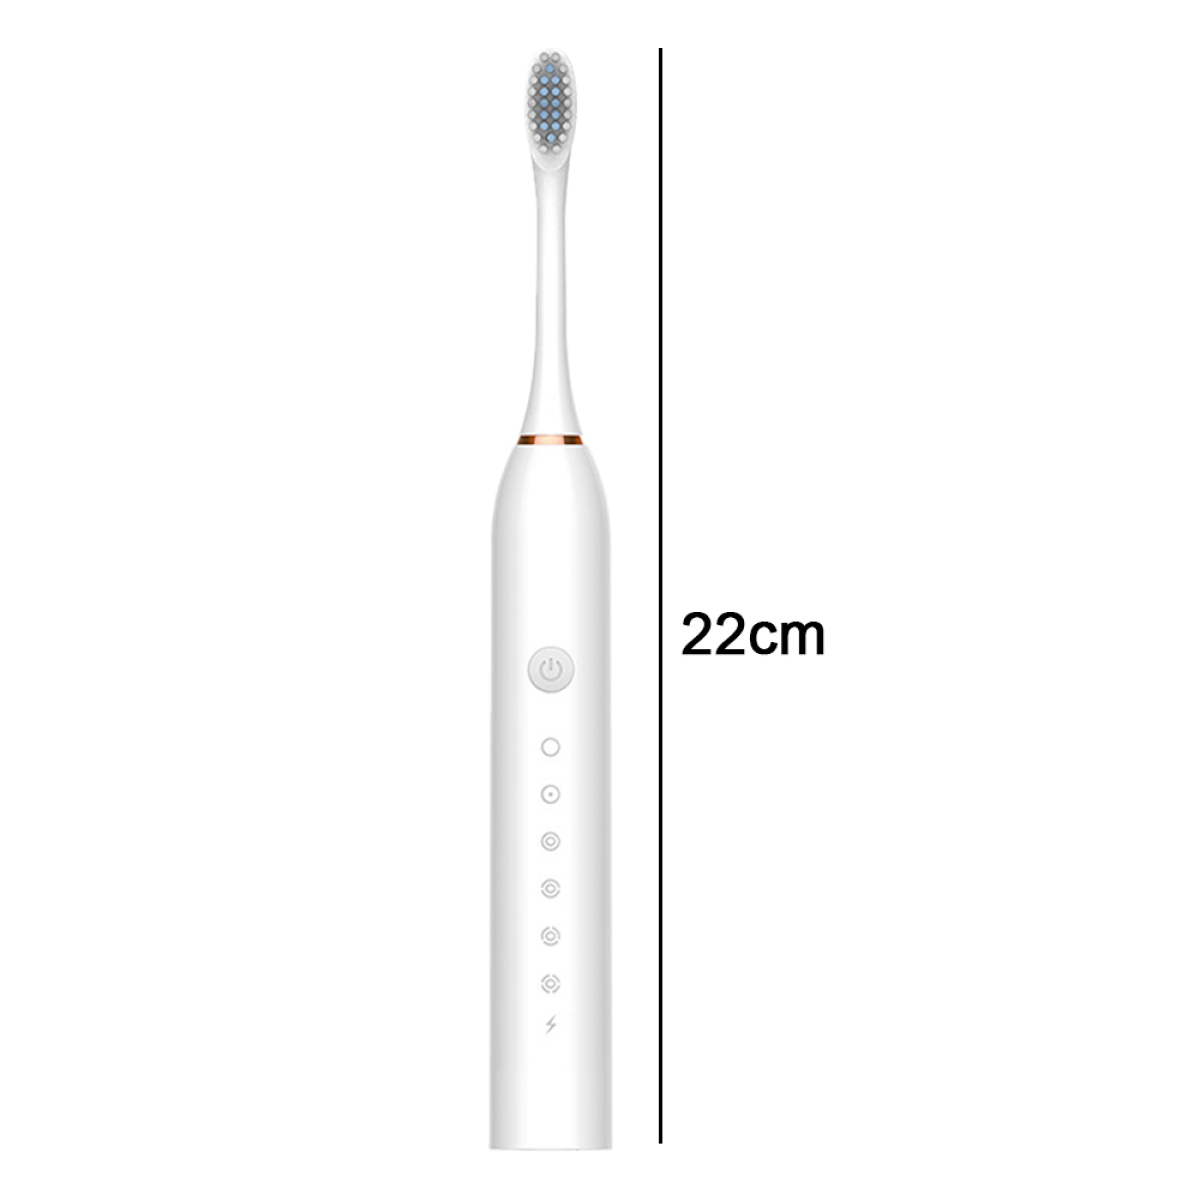 ELKUAIE Gesunder Mundschutz elektrische Zahnbürste white